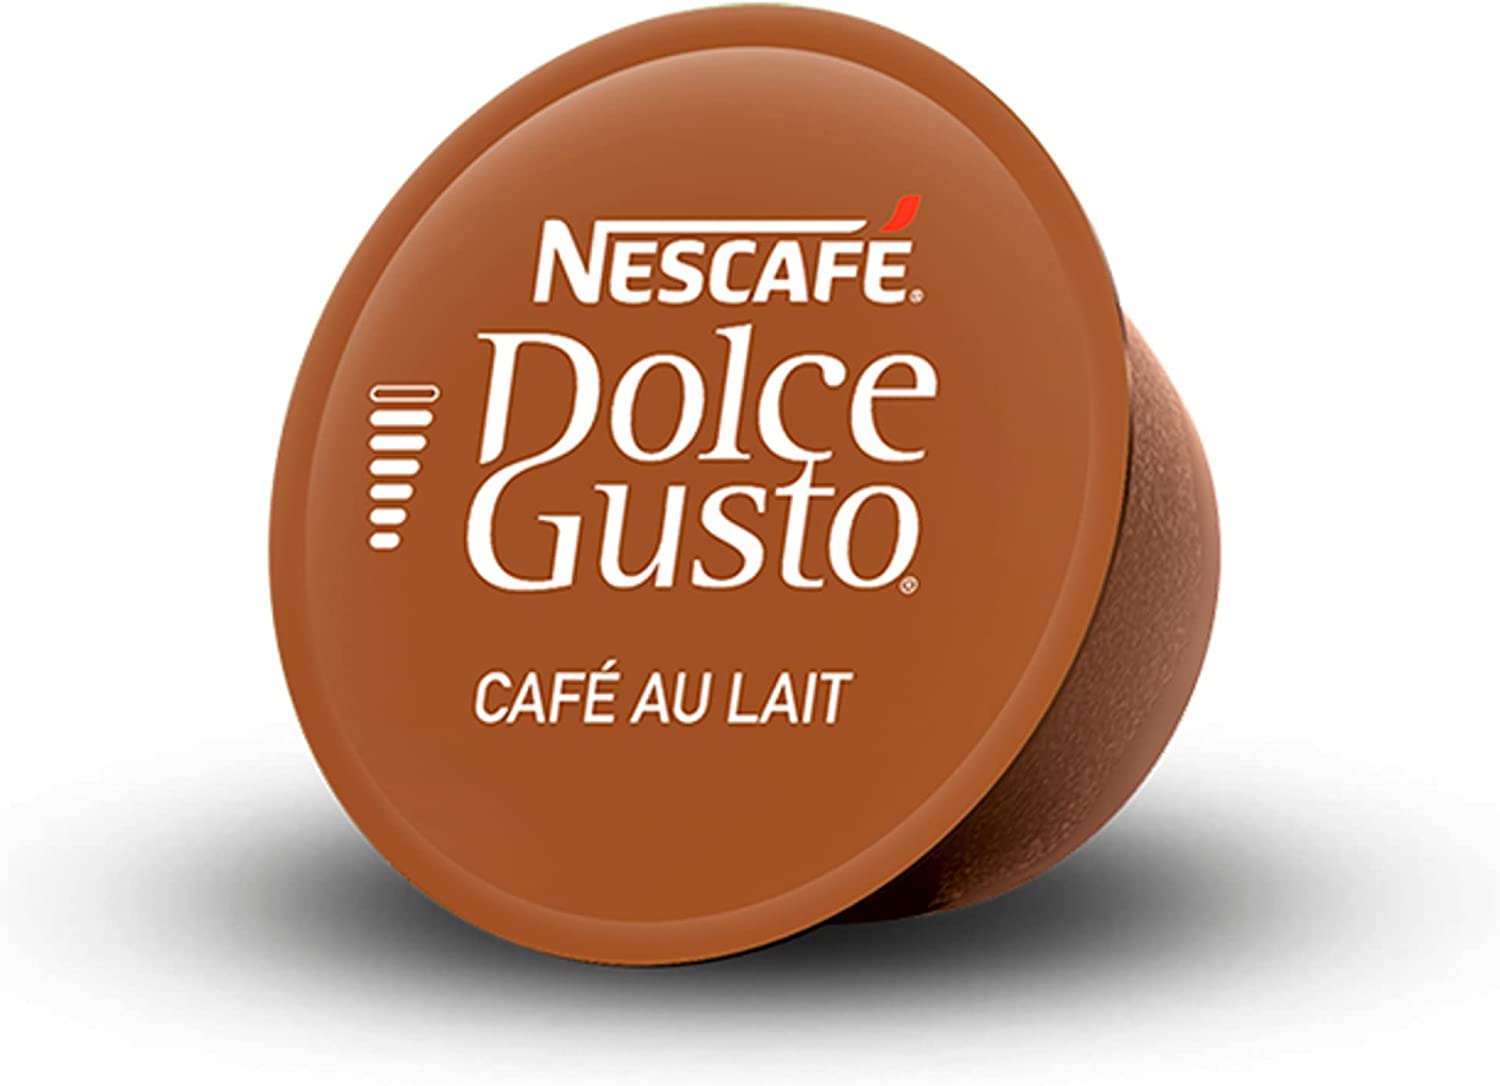 Café au Lait Coffee Pods